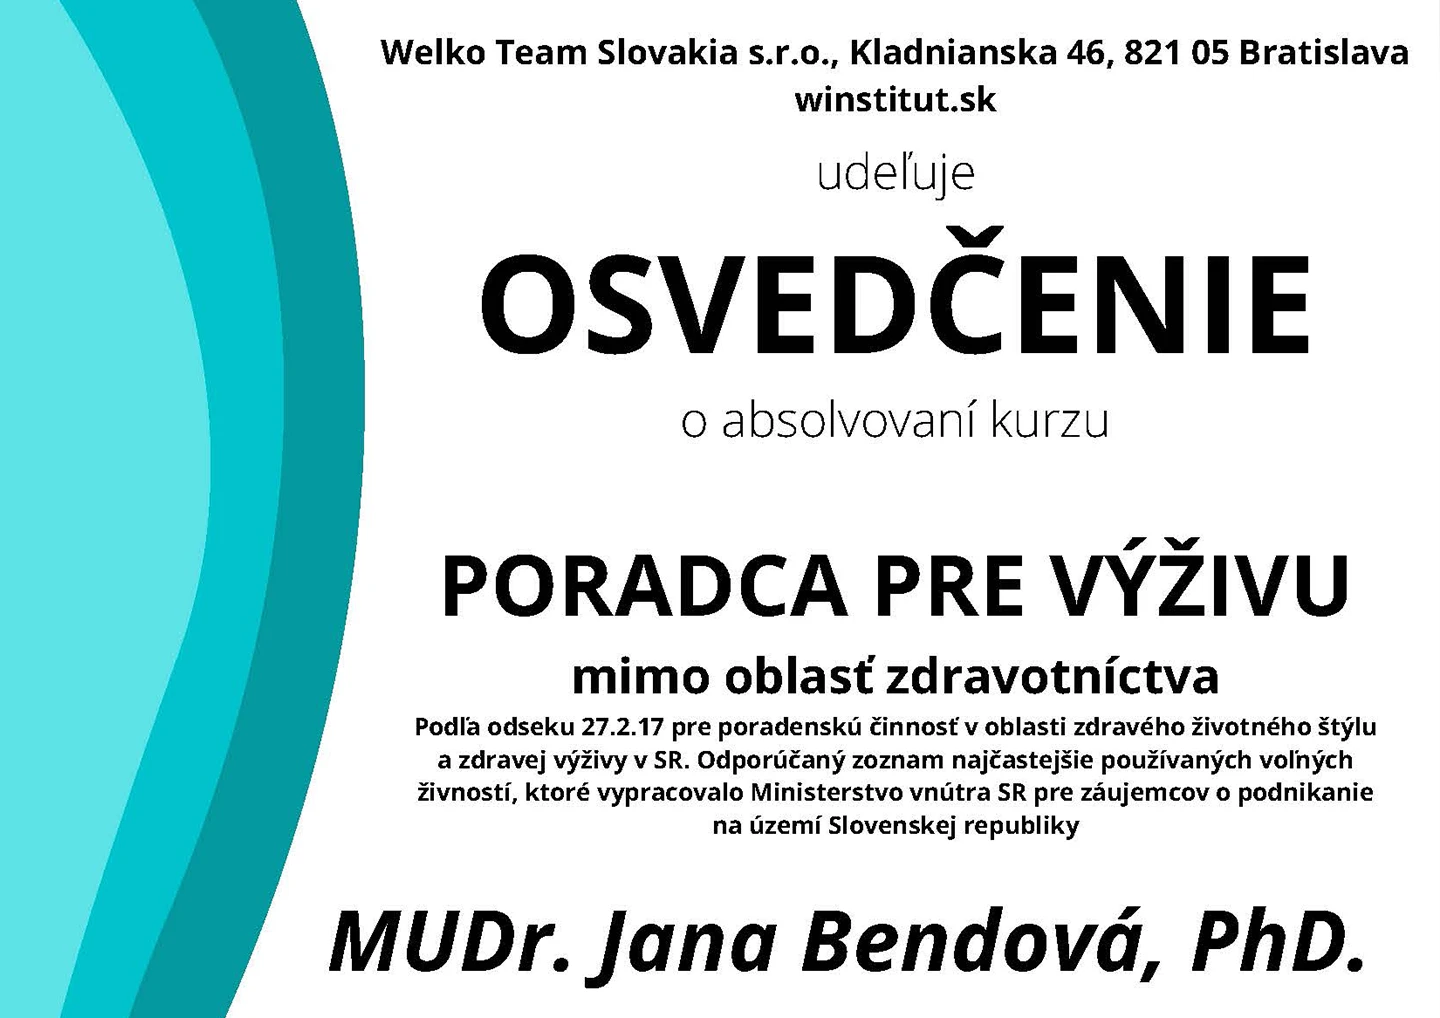 MUDr. Jana Bendová, PhD. certifikát - poradca pre výživu